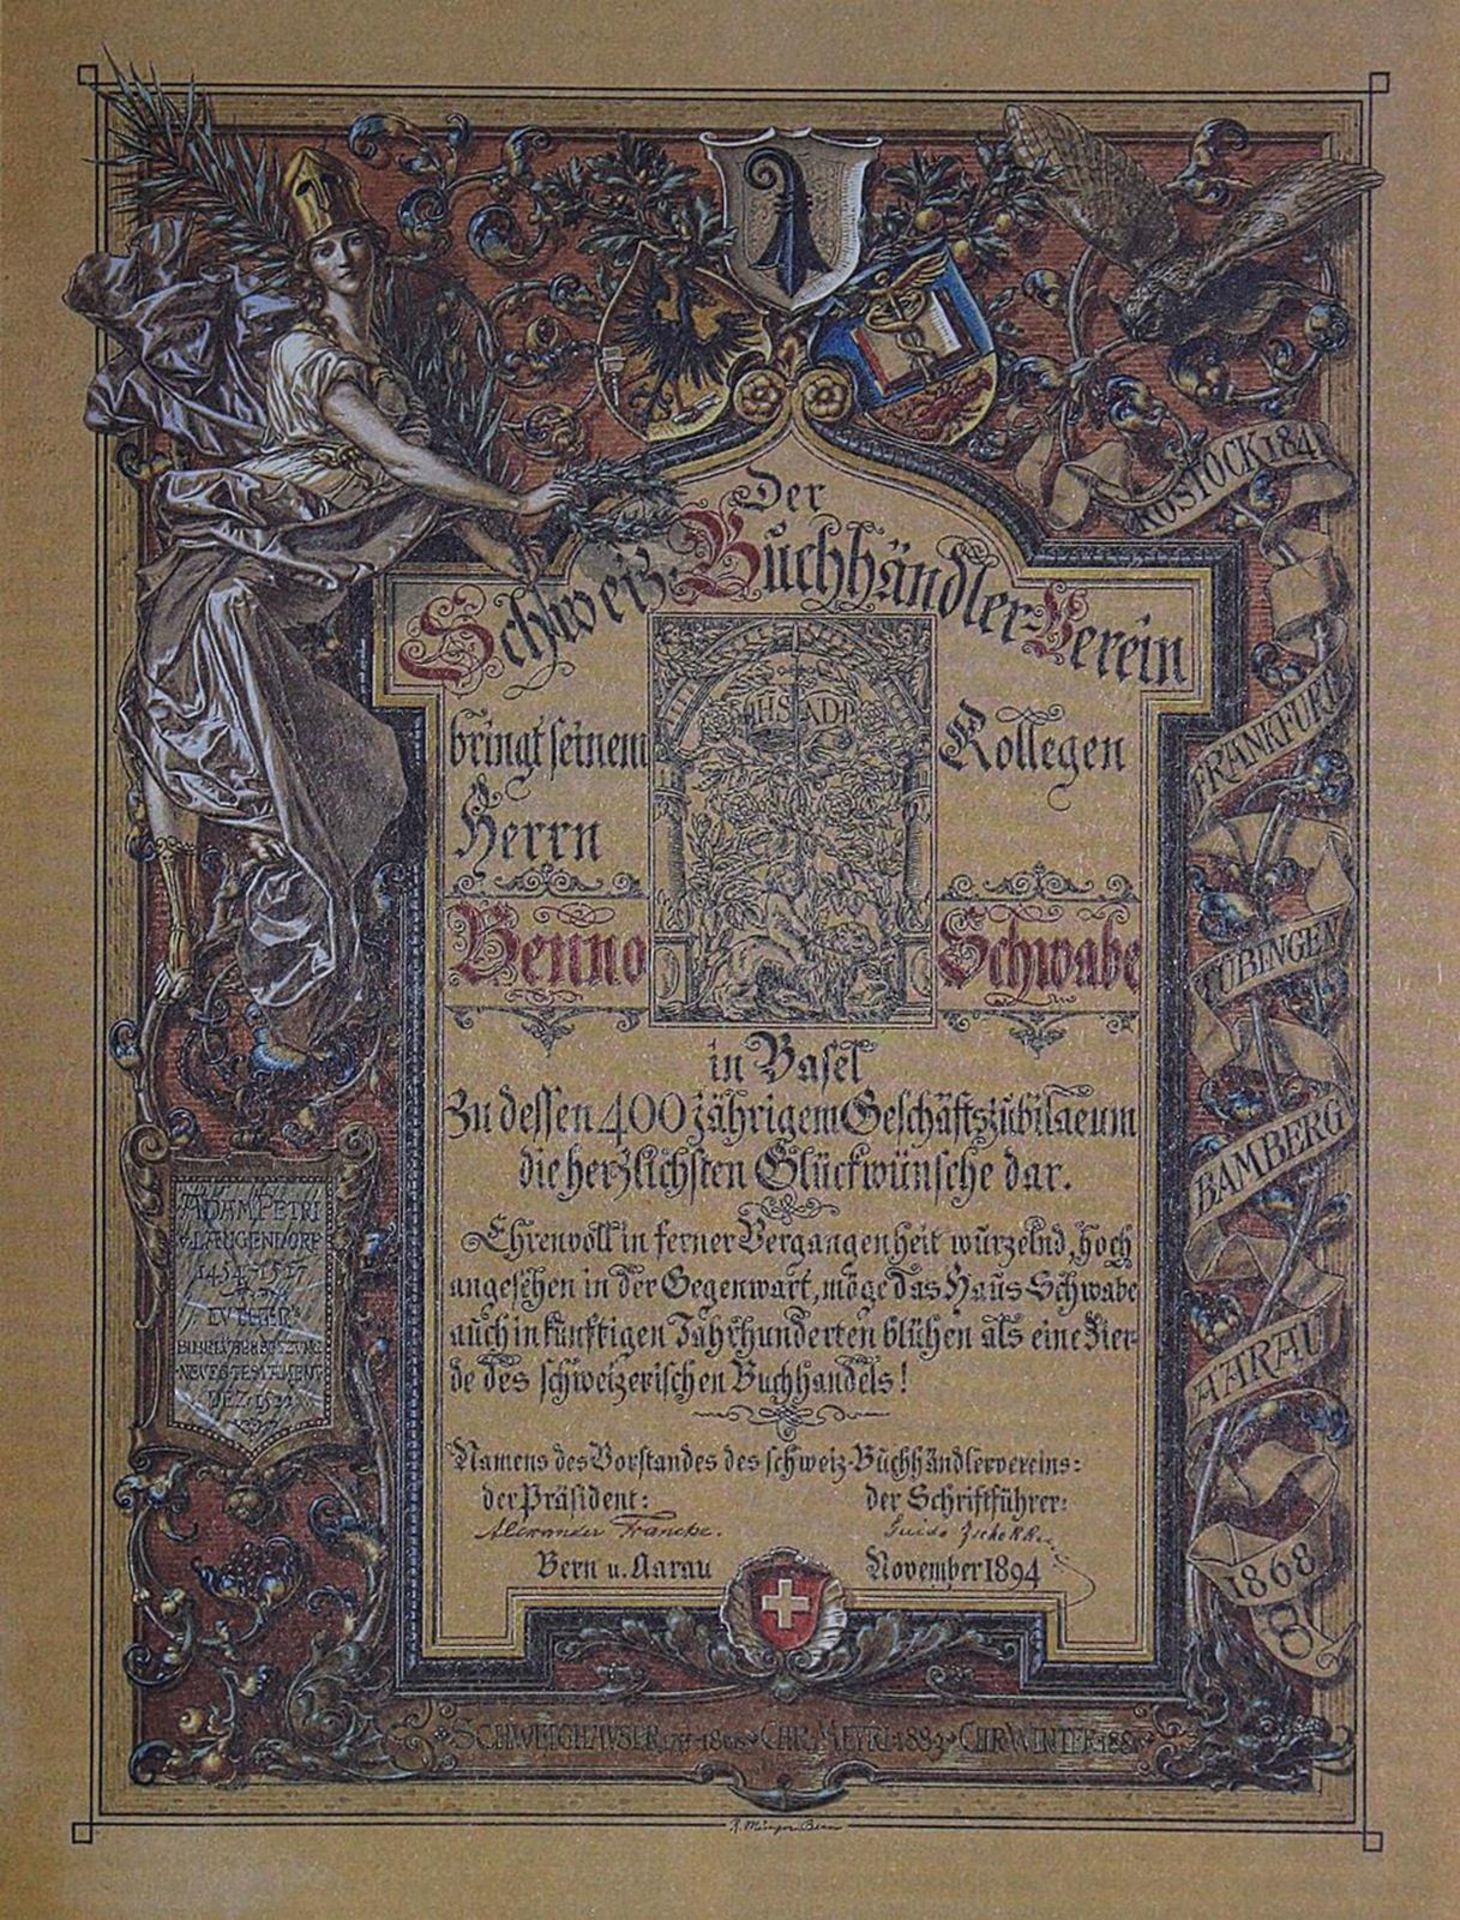 Hieronymus,F.1488 Petri - Schwabe 1988. Eine traditionsreiche Basler Offizin im Spiegel ihrer f